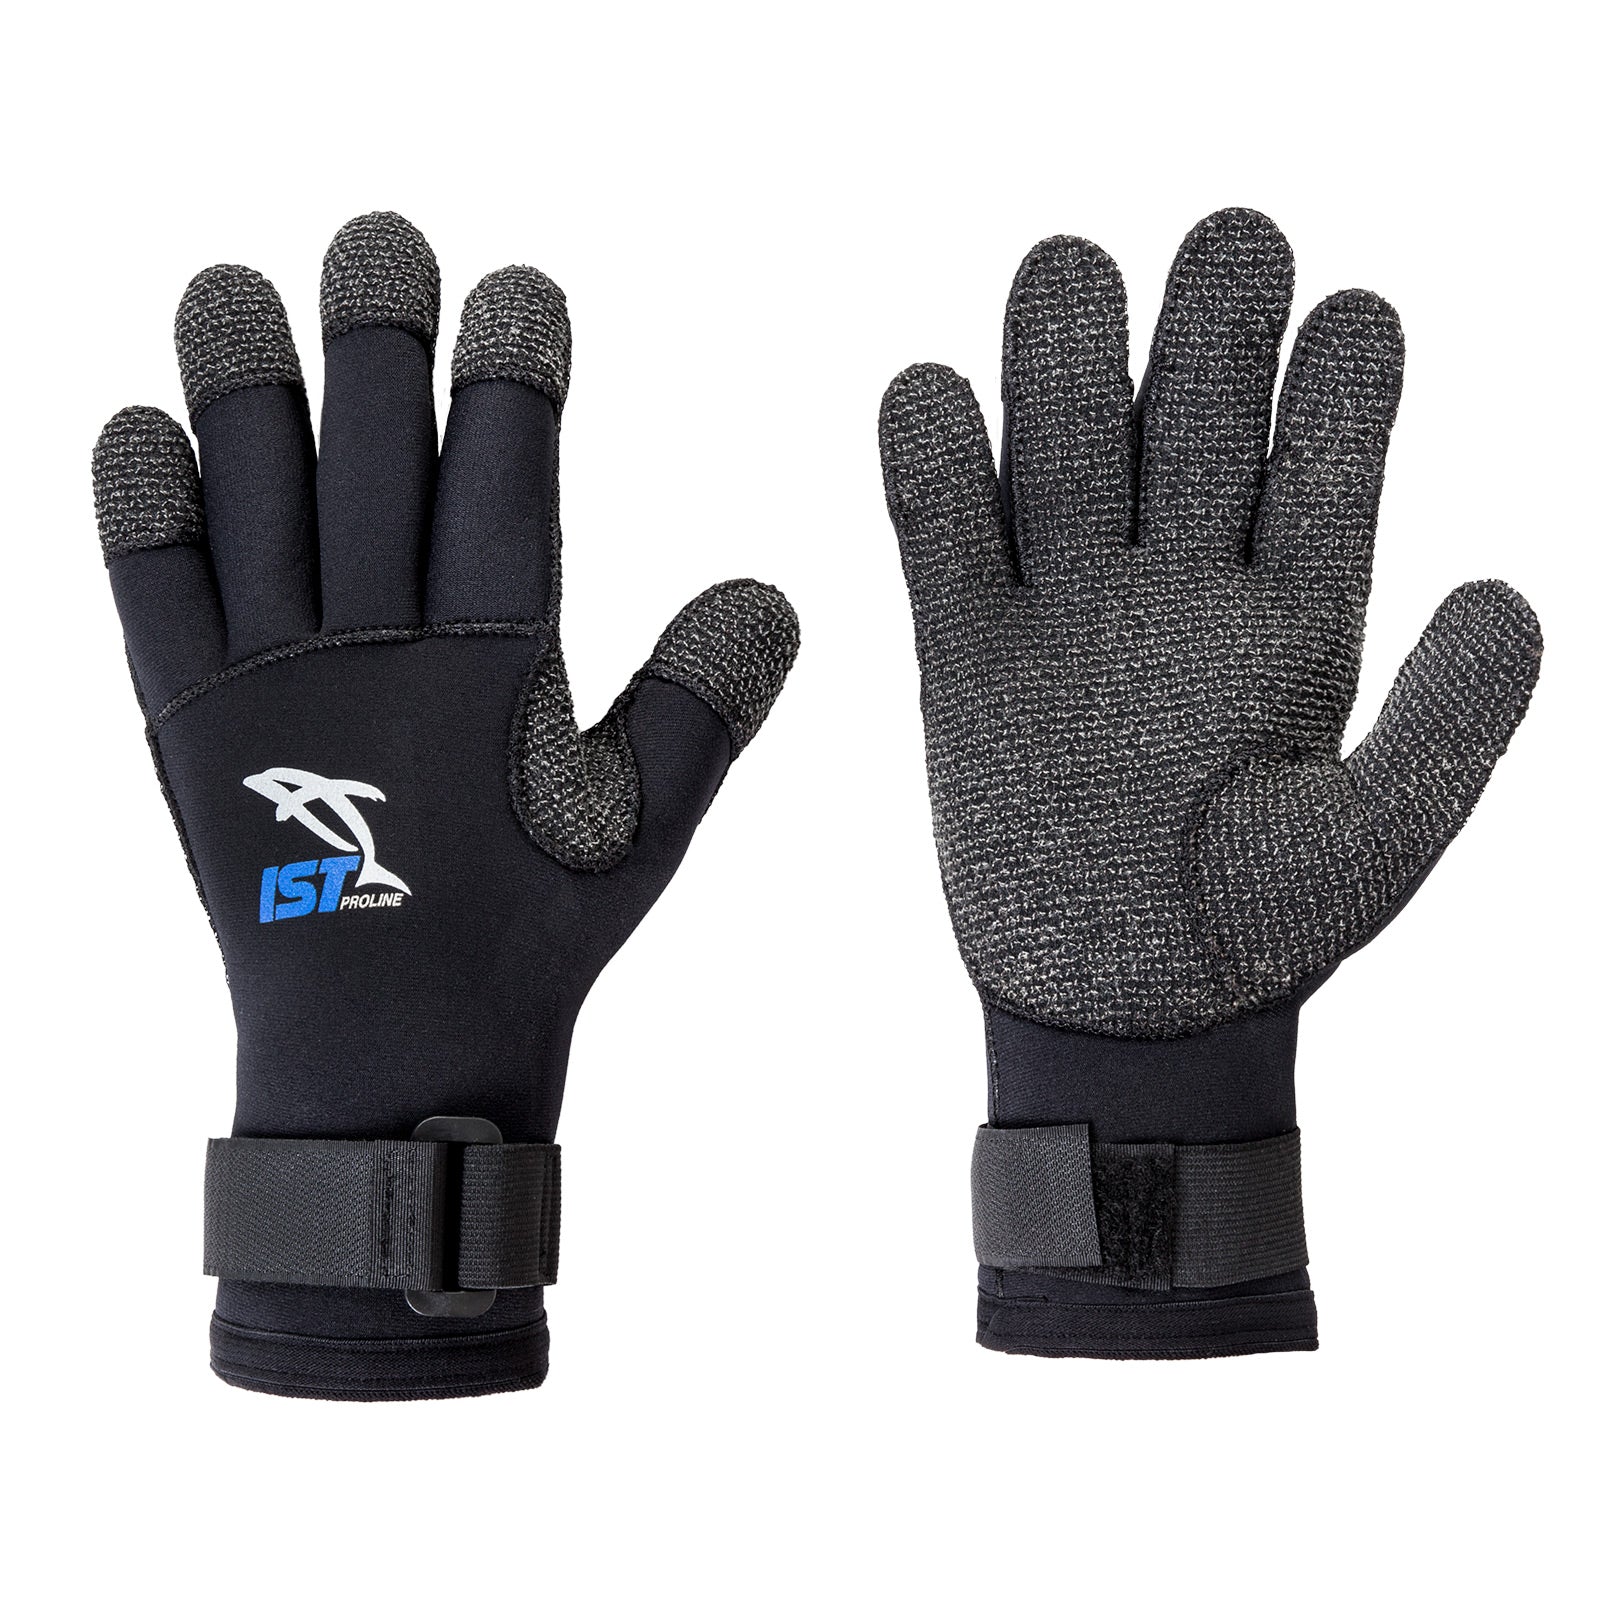 ist S780 3mm Kevlar Gloves (Large)